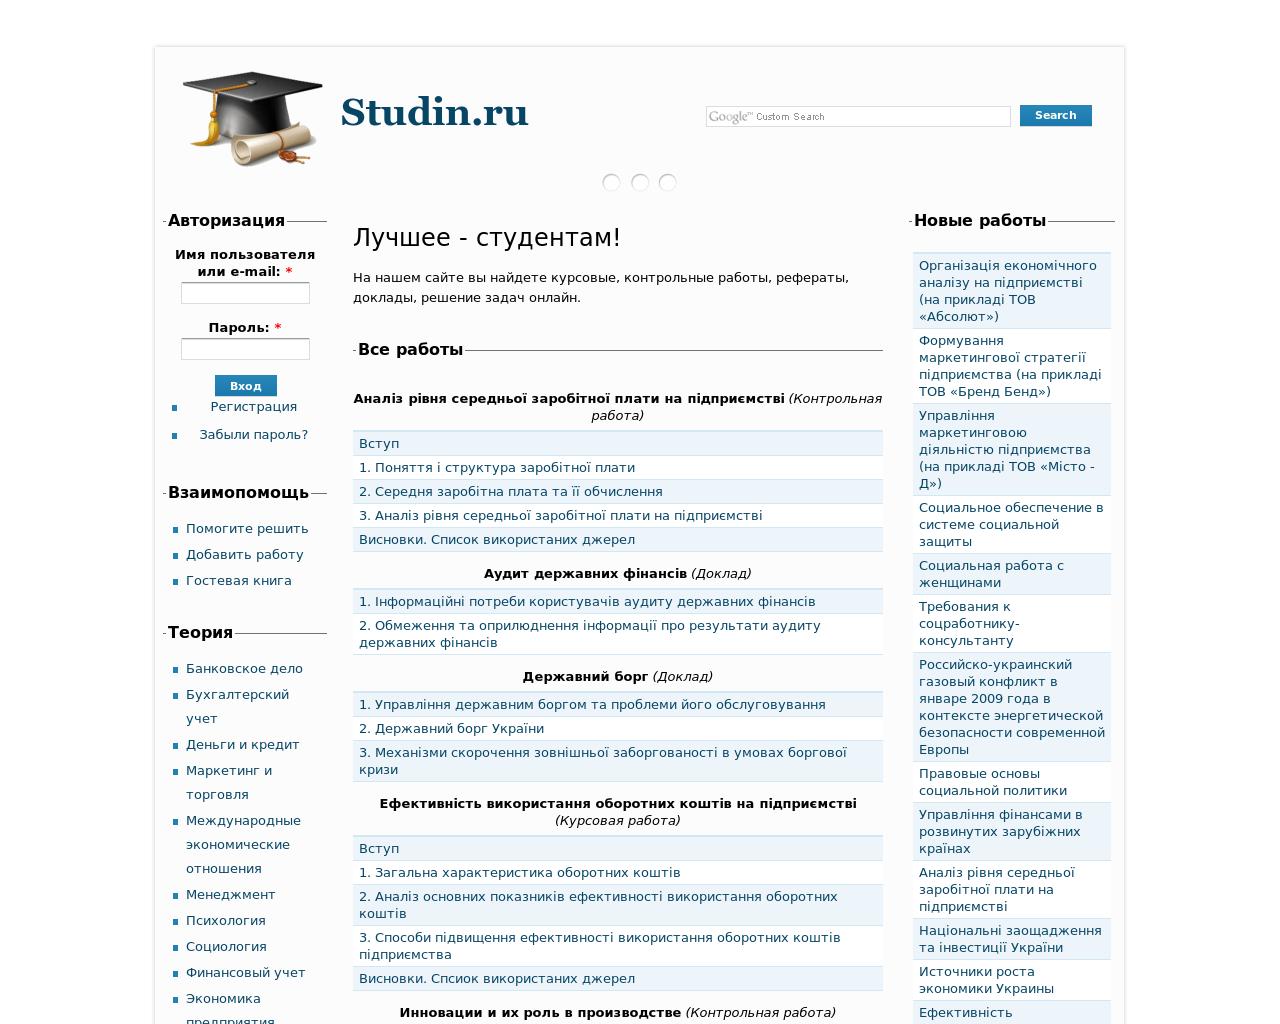 Изображение сайта studin.ru в разрешении 1280x1024